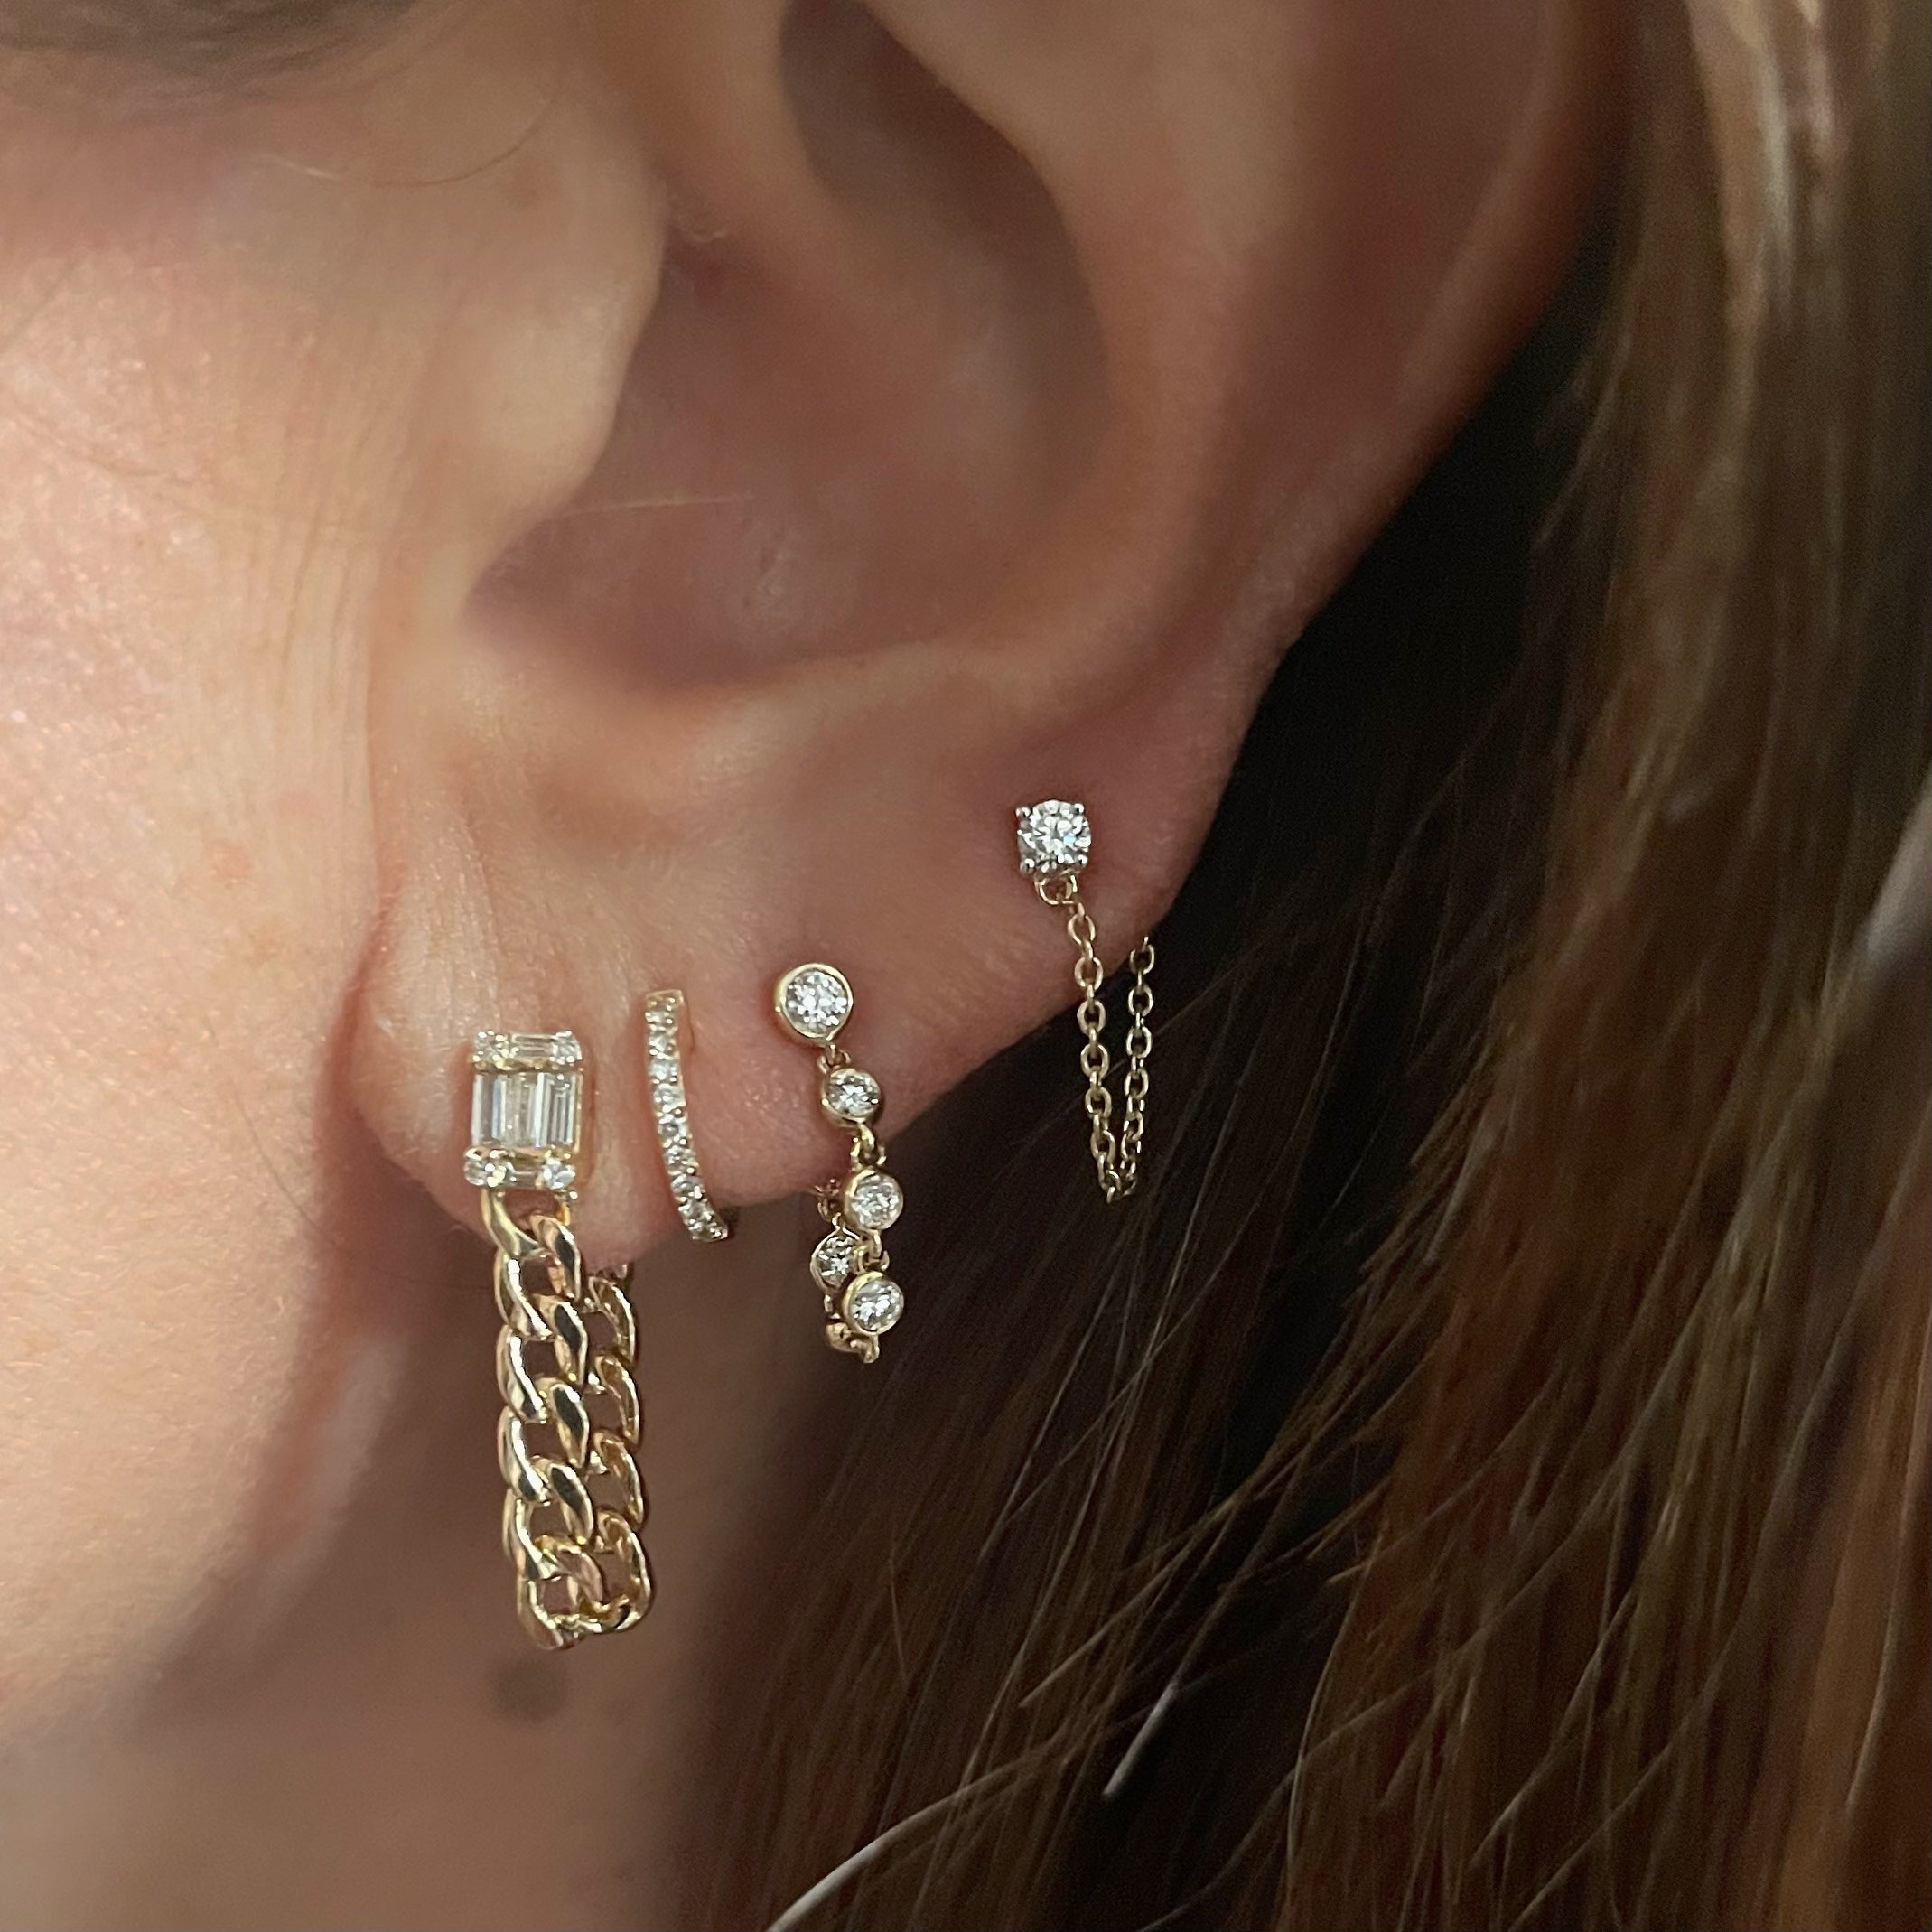 Diamond Bezel Chain Earrings